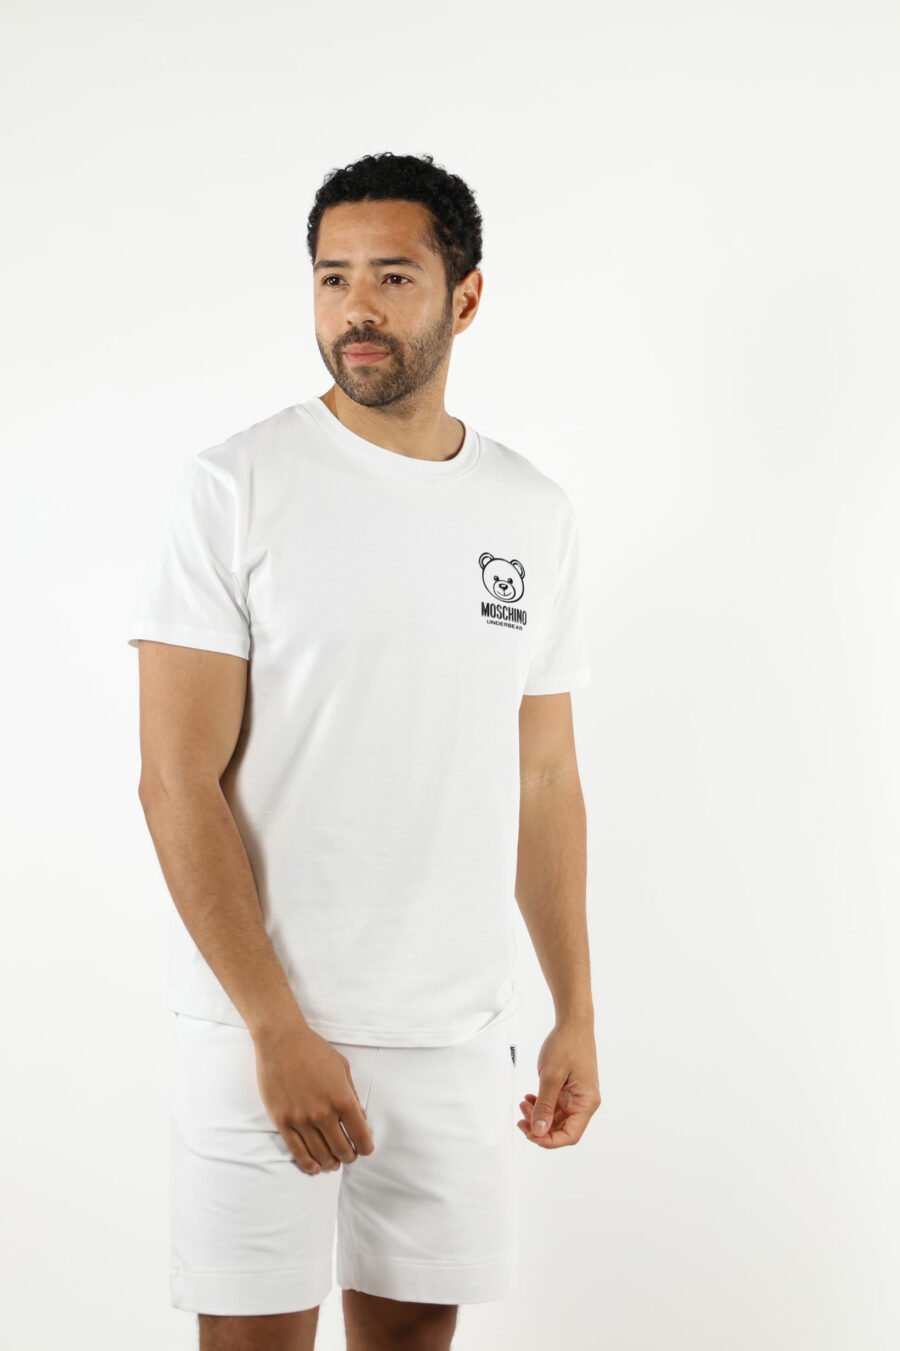 Camiseta blanca con minilogo oso "underbear" en goma negro - 111030